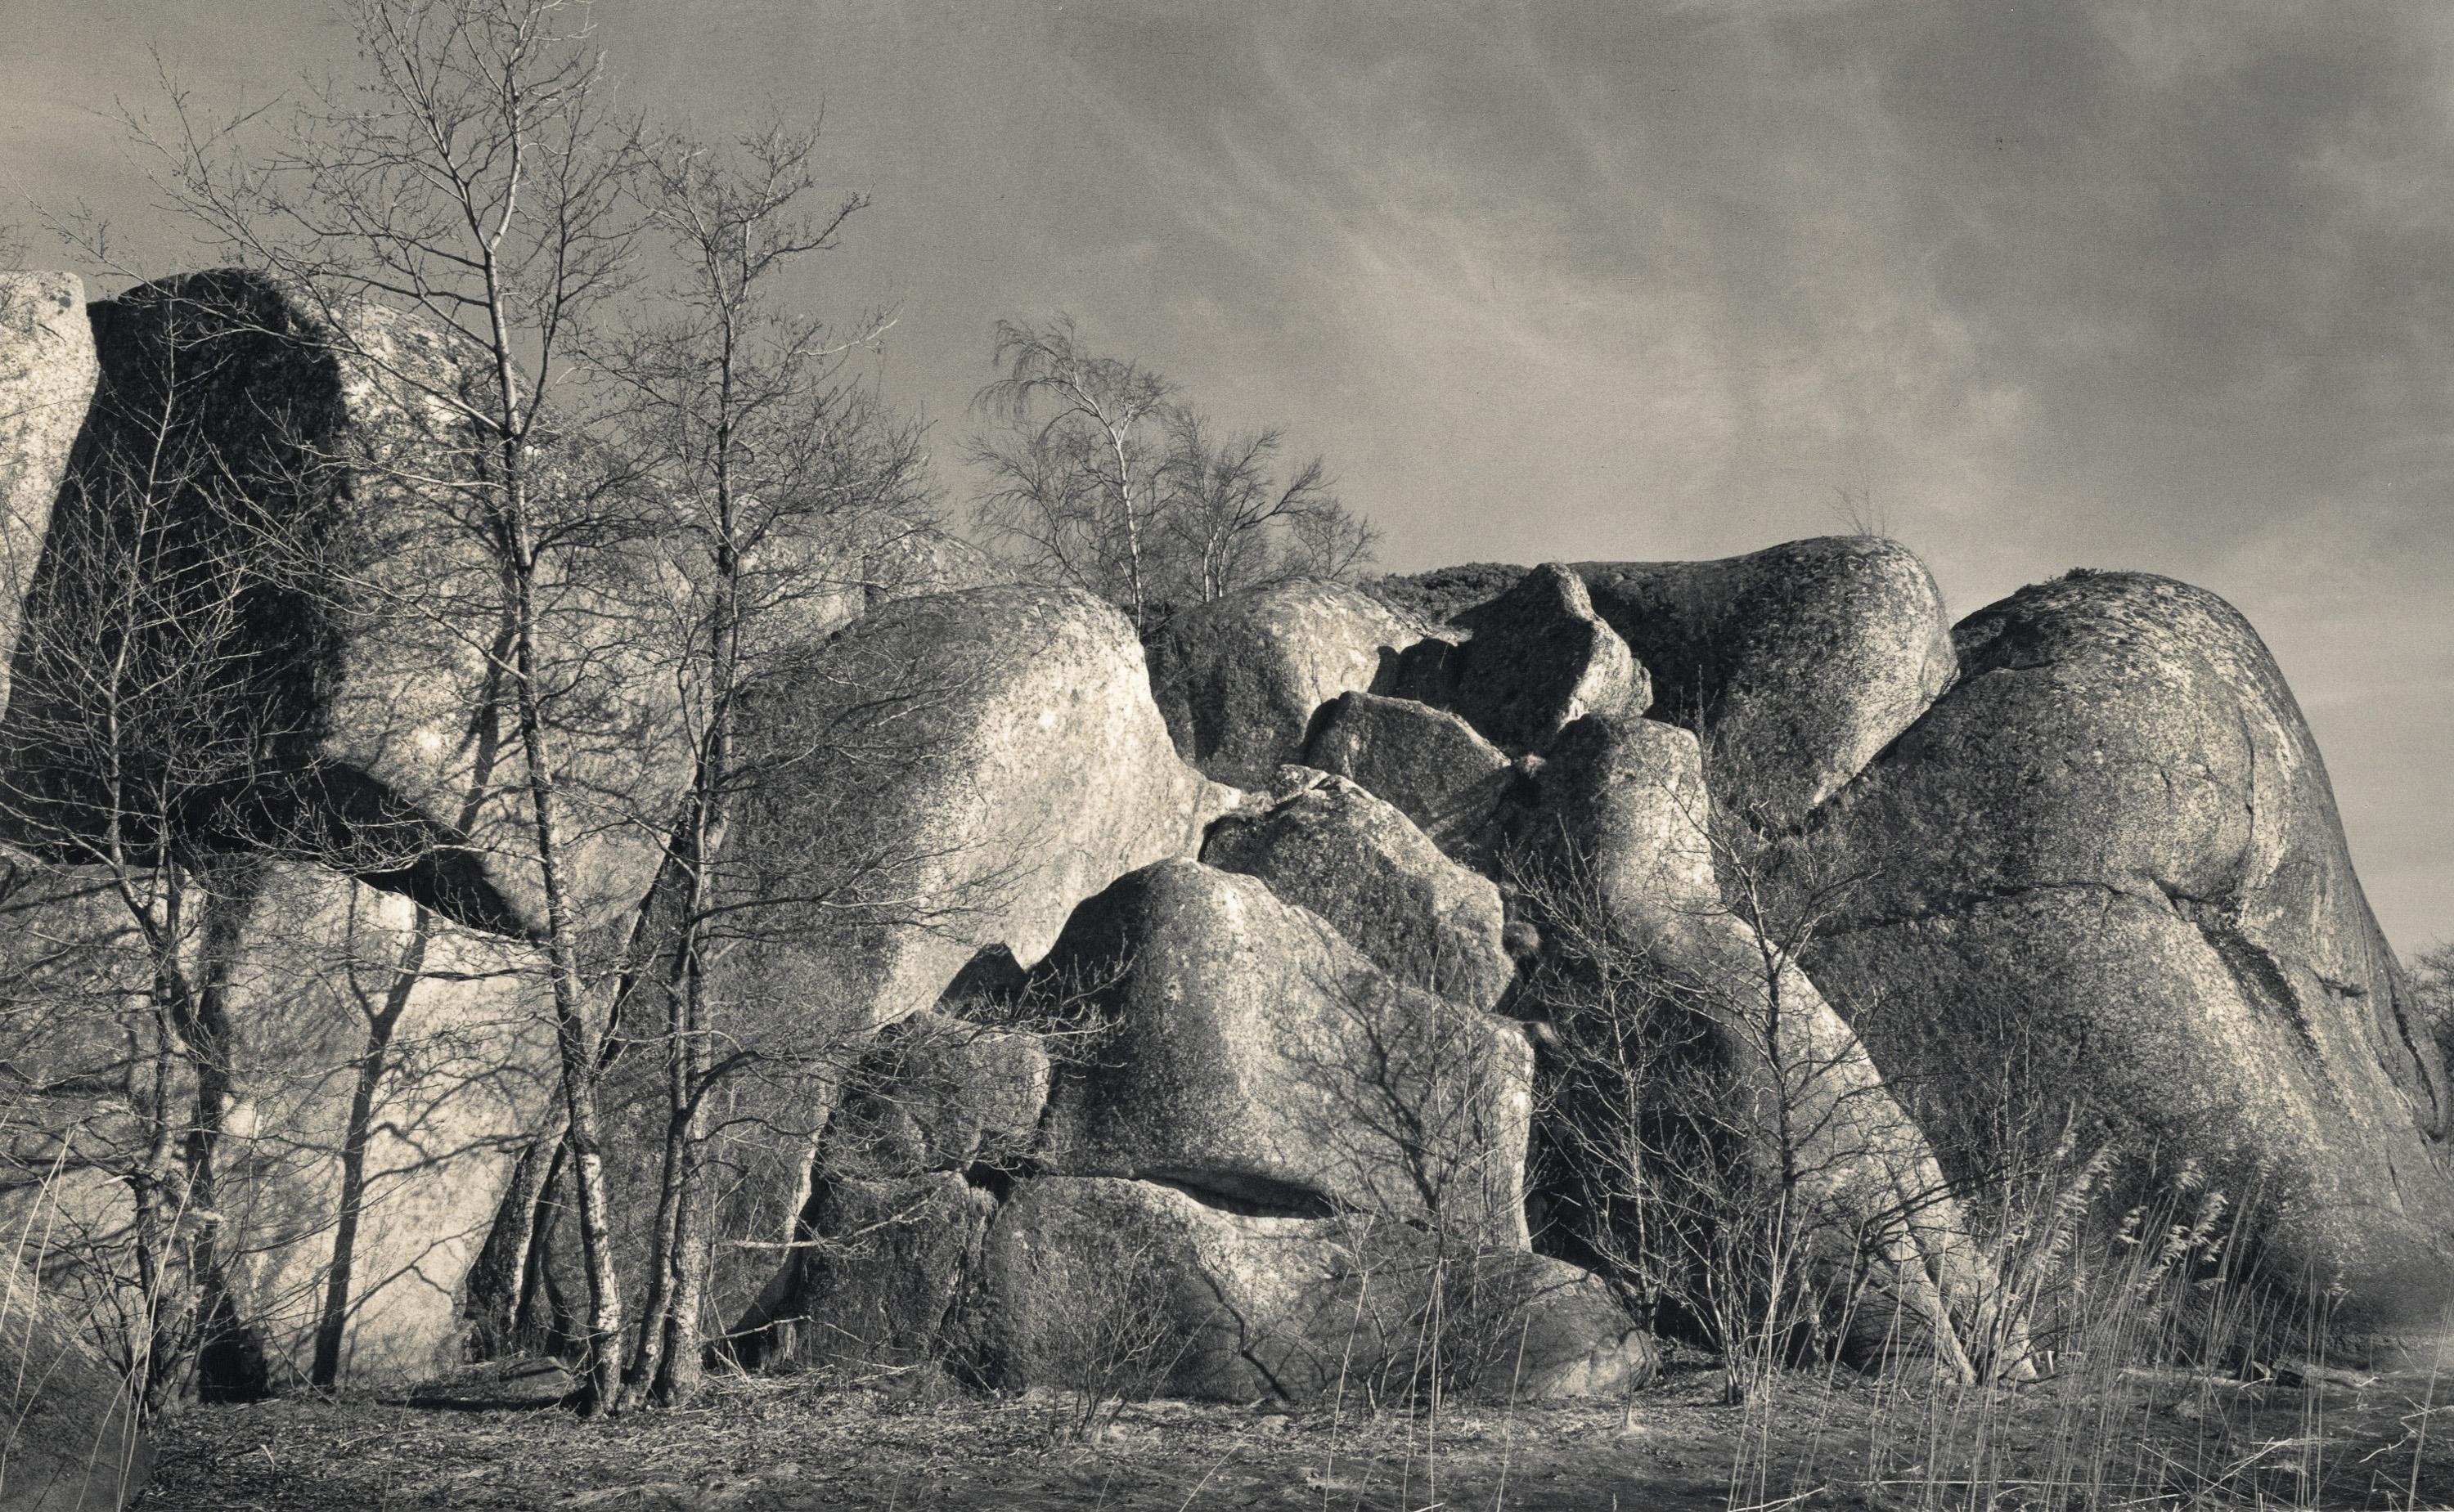 Pentti Sammallahti Abstract Photograph - Kokar, Finland (Rock Formation)